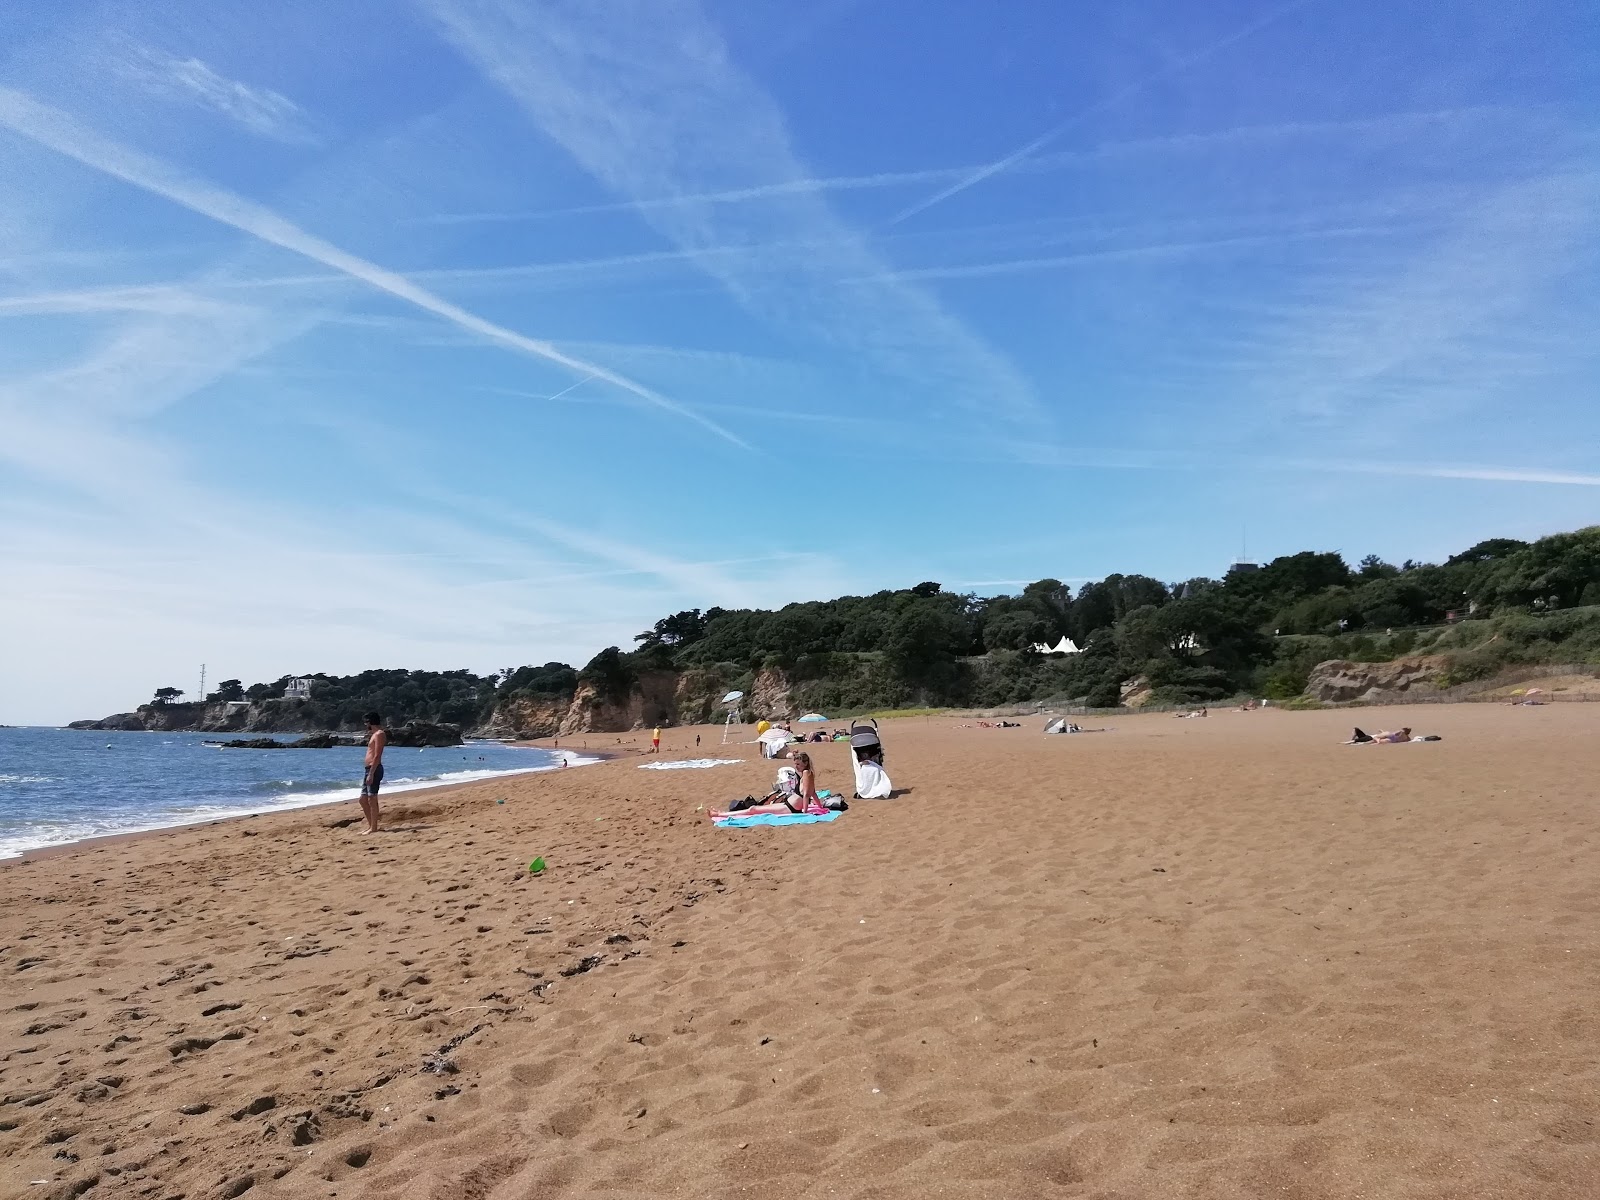 Saint-Marc beach'in fotoğrafı geniş ile birlikte